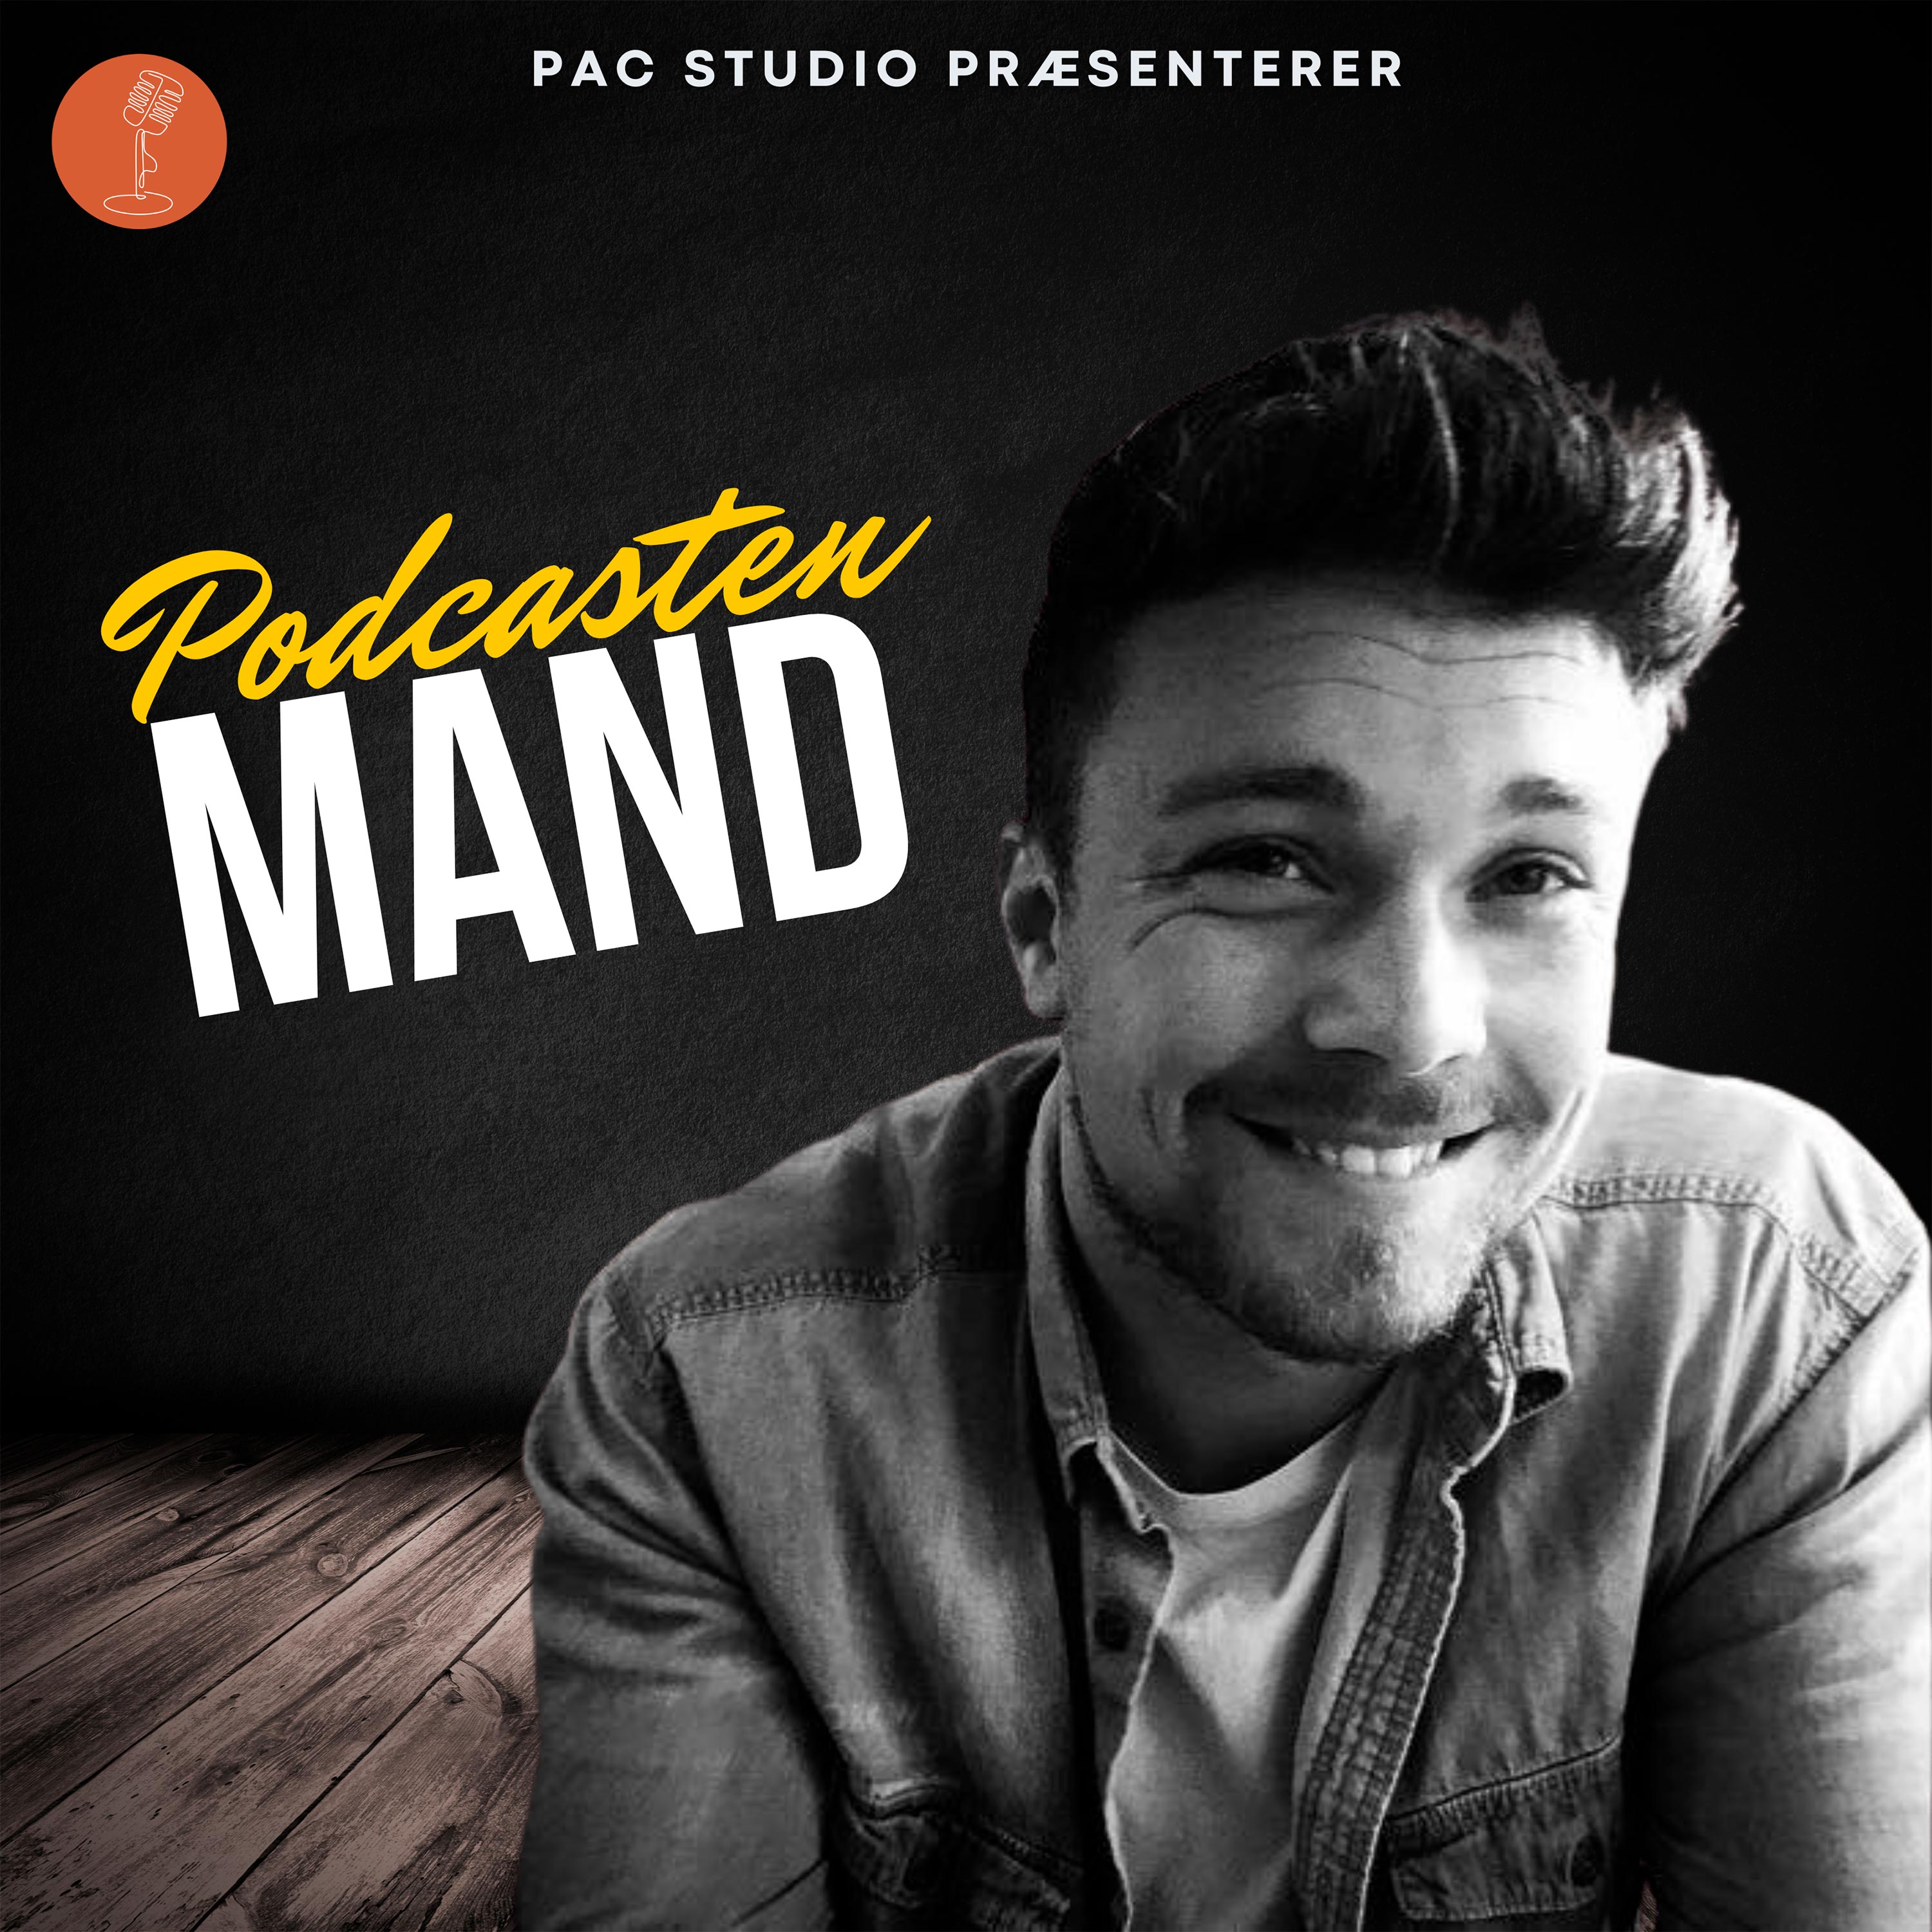 Podcasten MAND - Introduktion